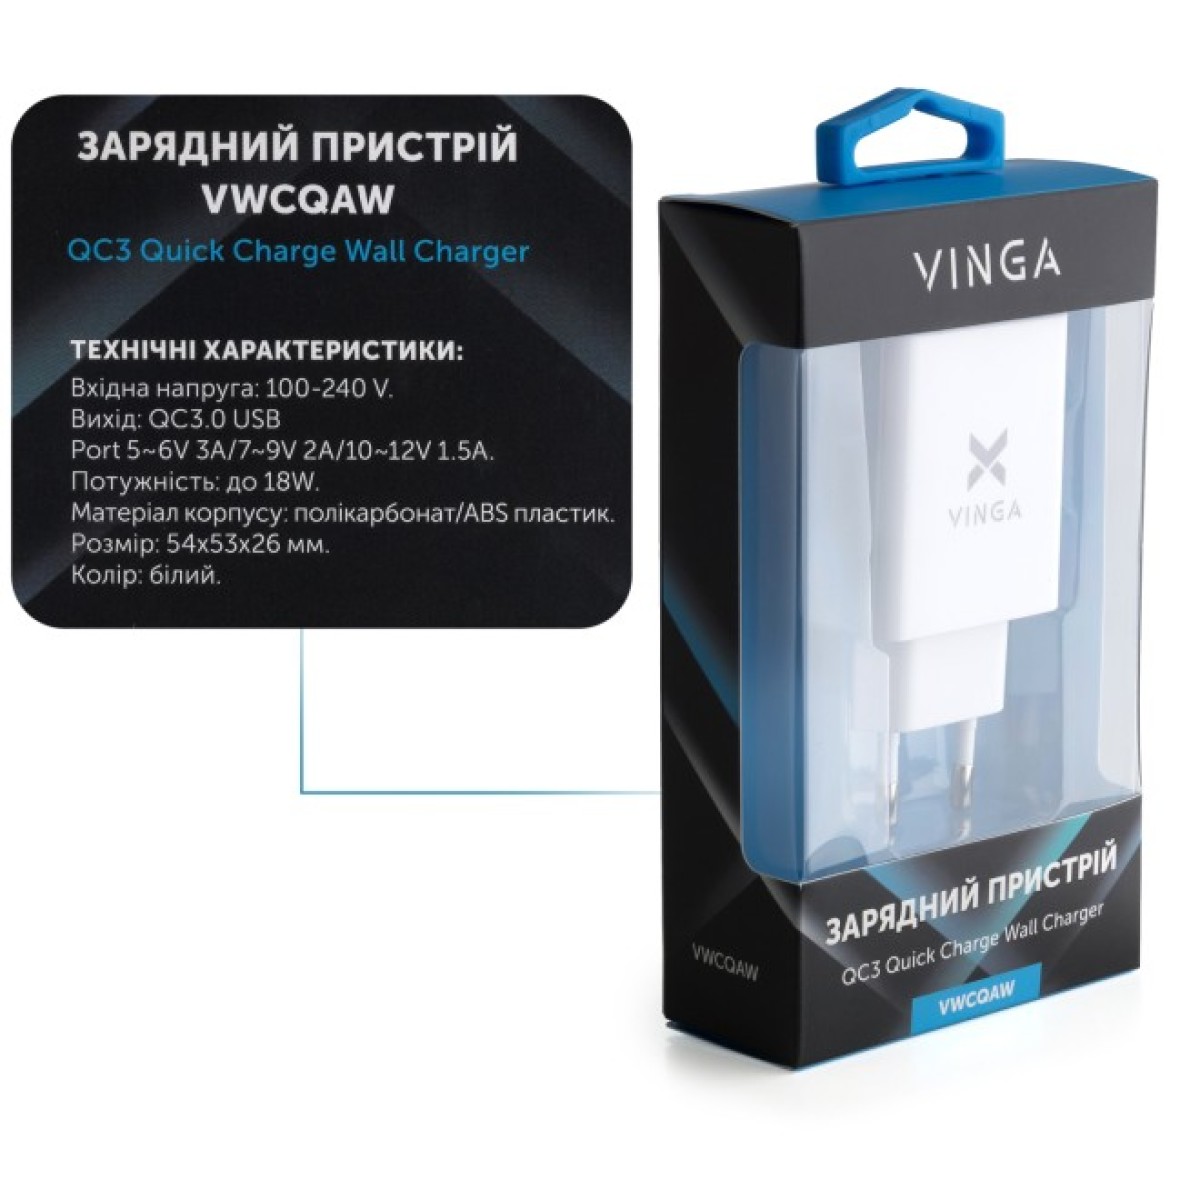 Зарядний пристрій Vinga QC3.0 Quick Wall Charger 1xUSB 18W Max (VWCQAW) 98_98.jpg - фото 2